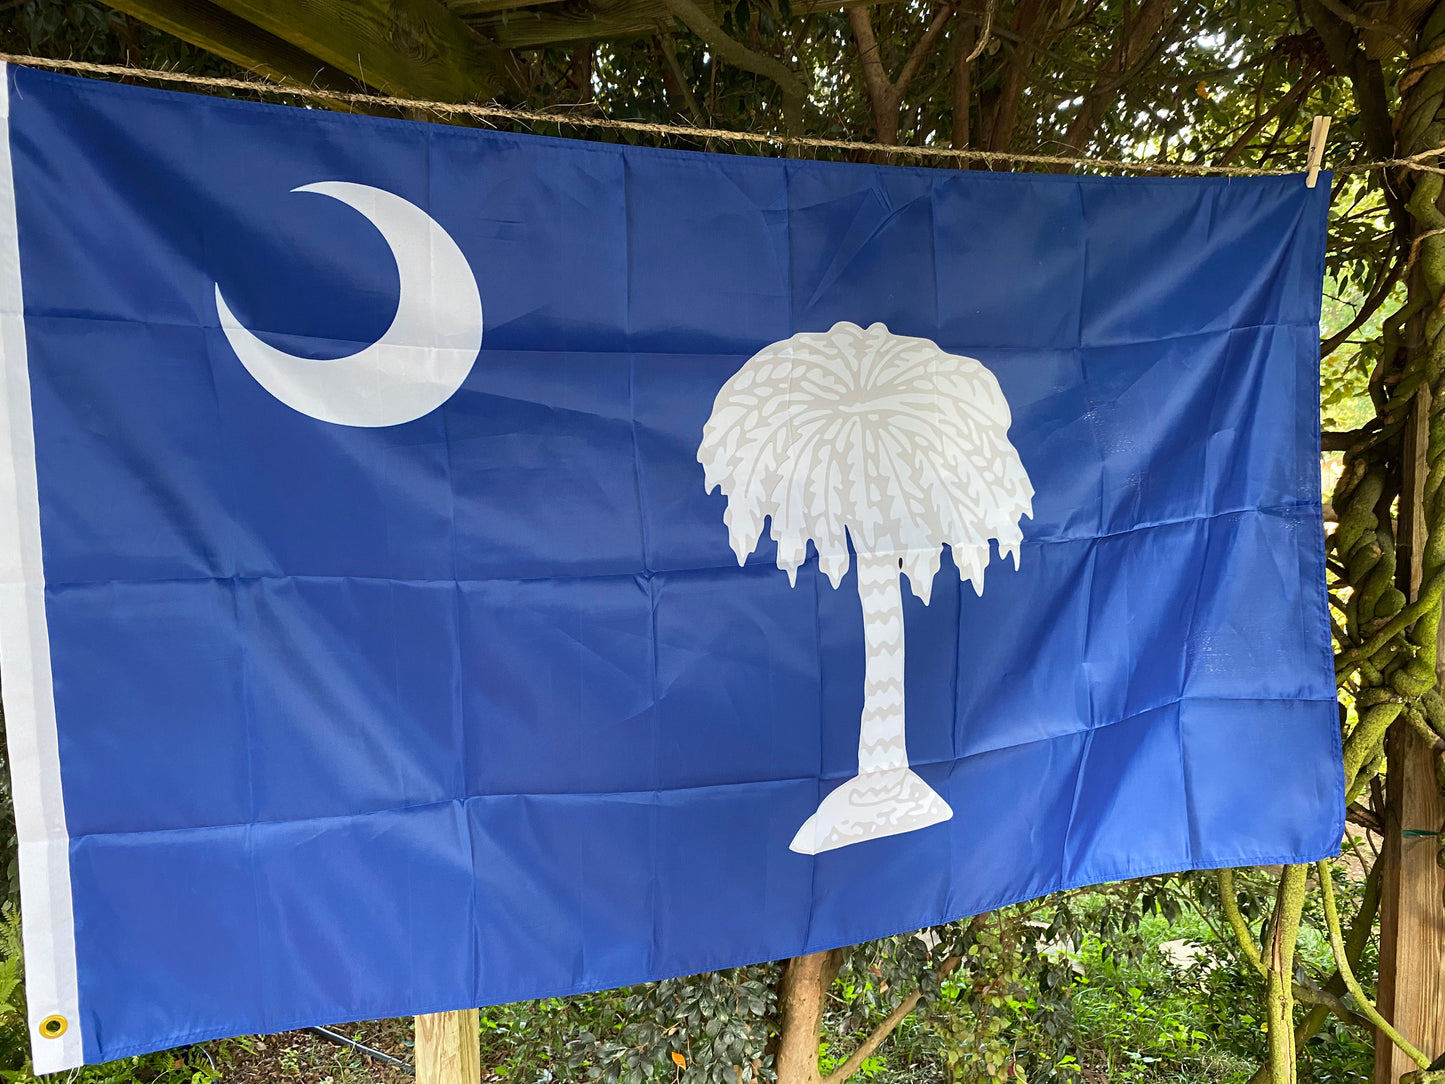 South Carolina "Palmetto Republic" House Flag